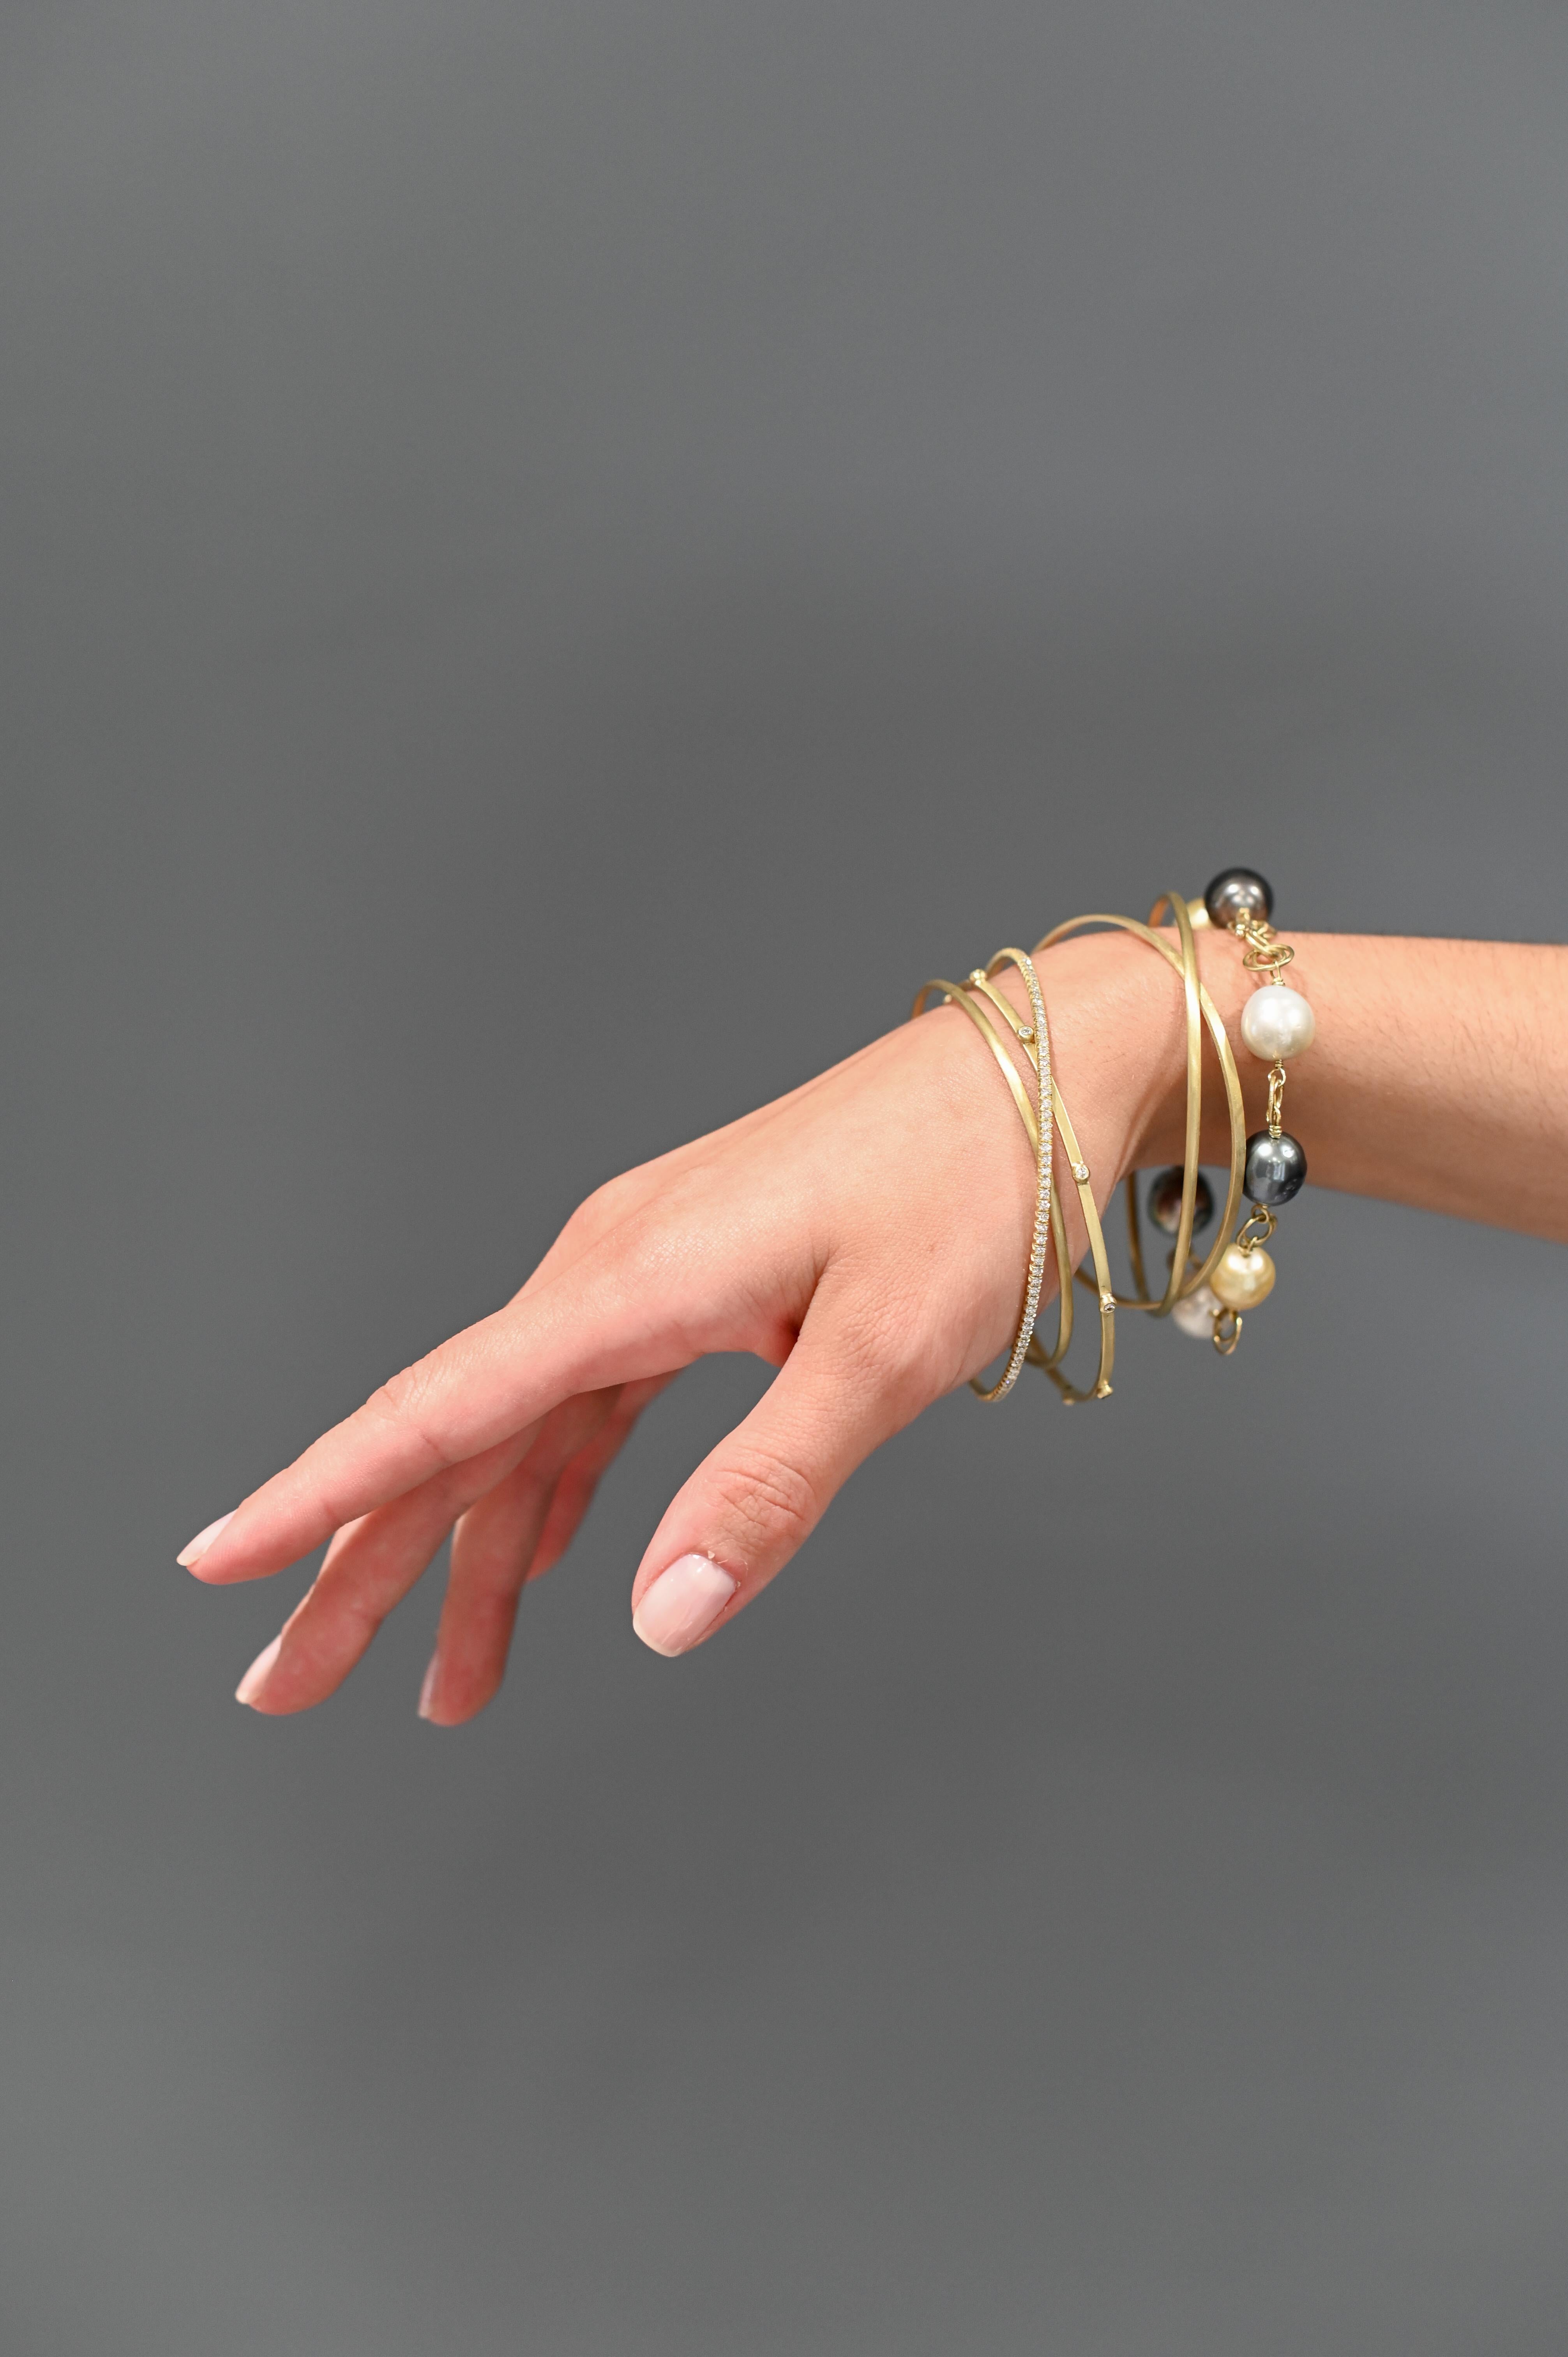 Les bracelets fins en or 18 carats de Faye Kim - vendus à l'unité - sont fabriqués en or massif. Les bracelets peuvent être portés seuls ou empilés pour un style unique. 

Largeur 2mm
Tailles :   
     Petit diamètre intérieur de 2,5
     Diamètre